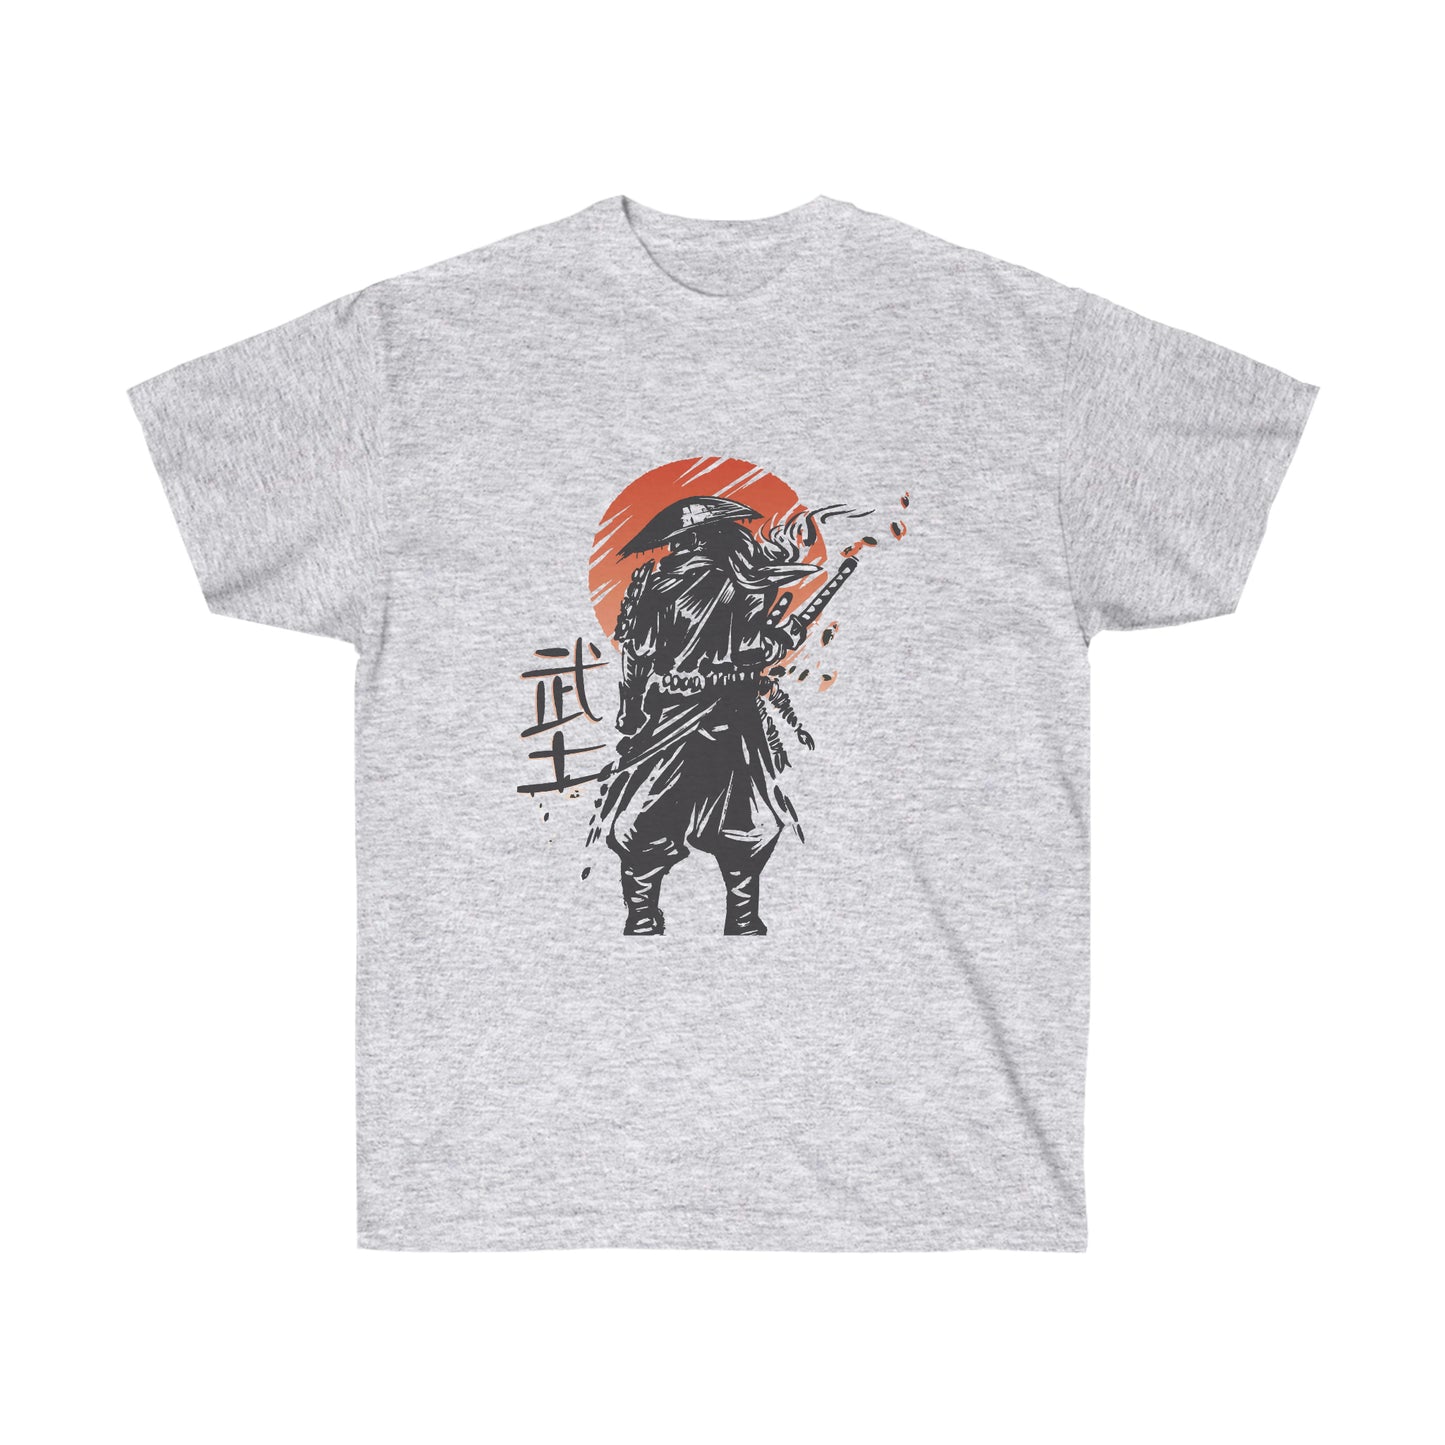 Japanese Aesthetic Samurai Graphic T-Shirt